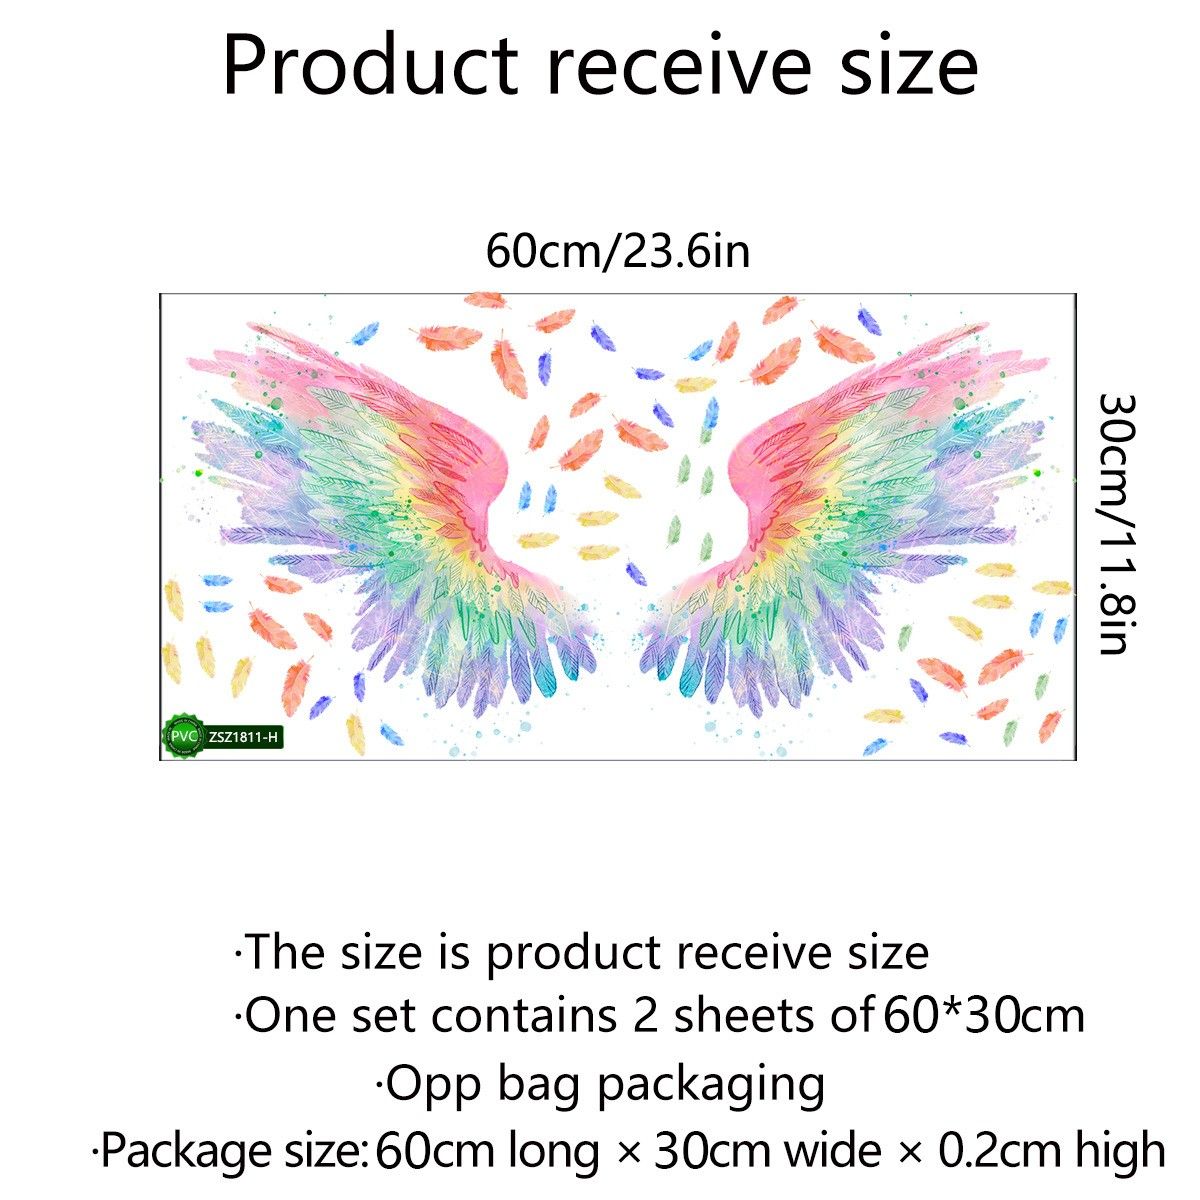 ウォールステッカー 虹色 天使の翼 レインボー ウォールデコ 壁紙 模様替え